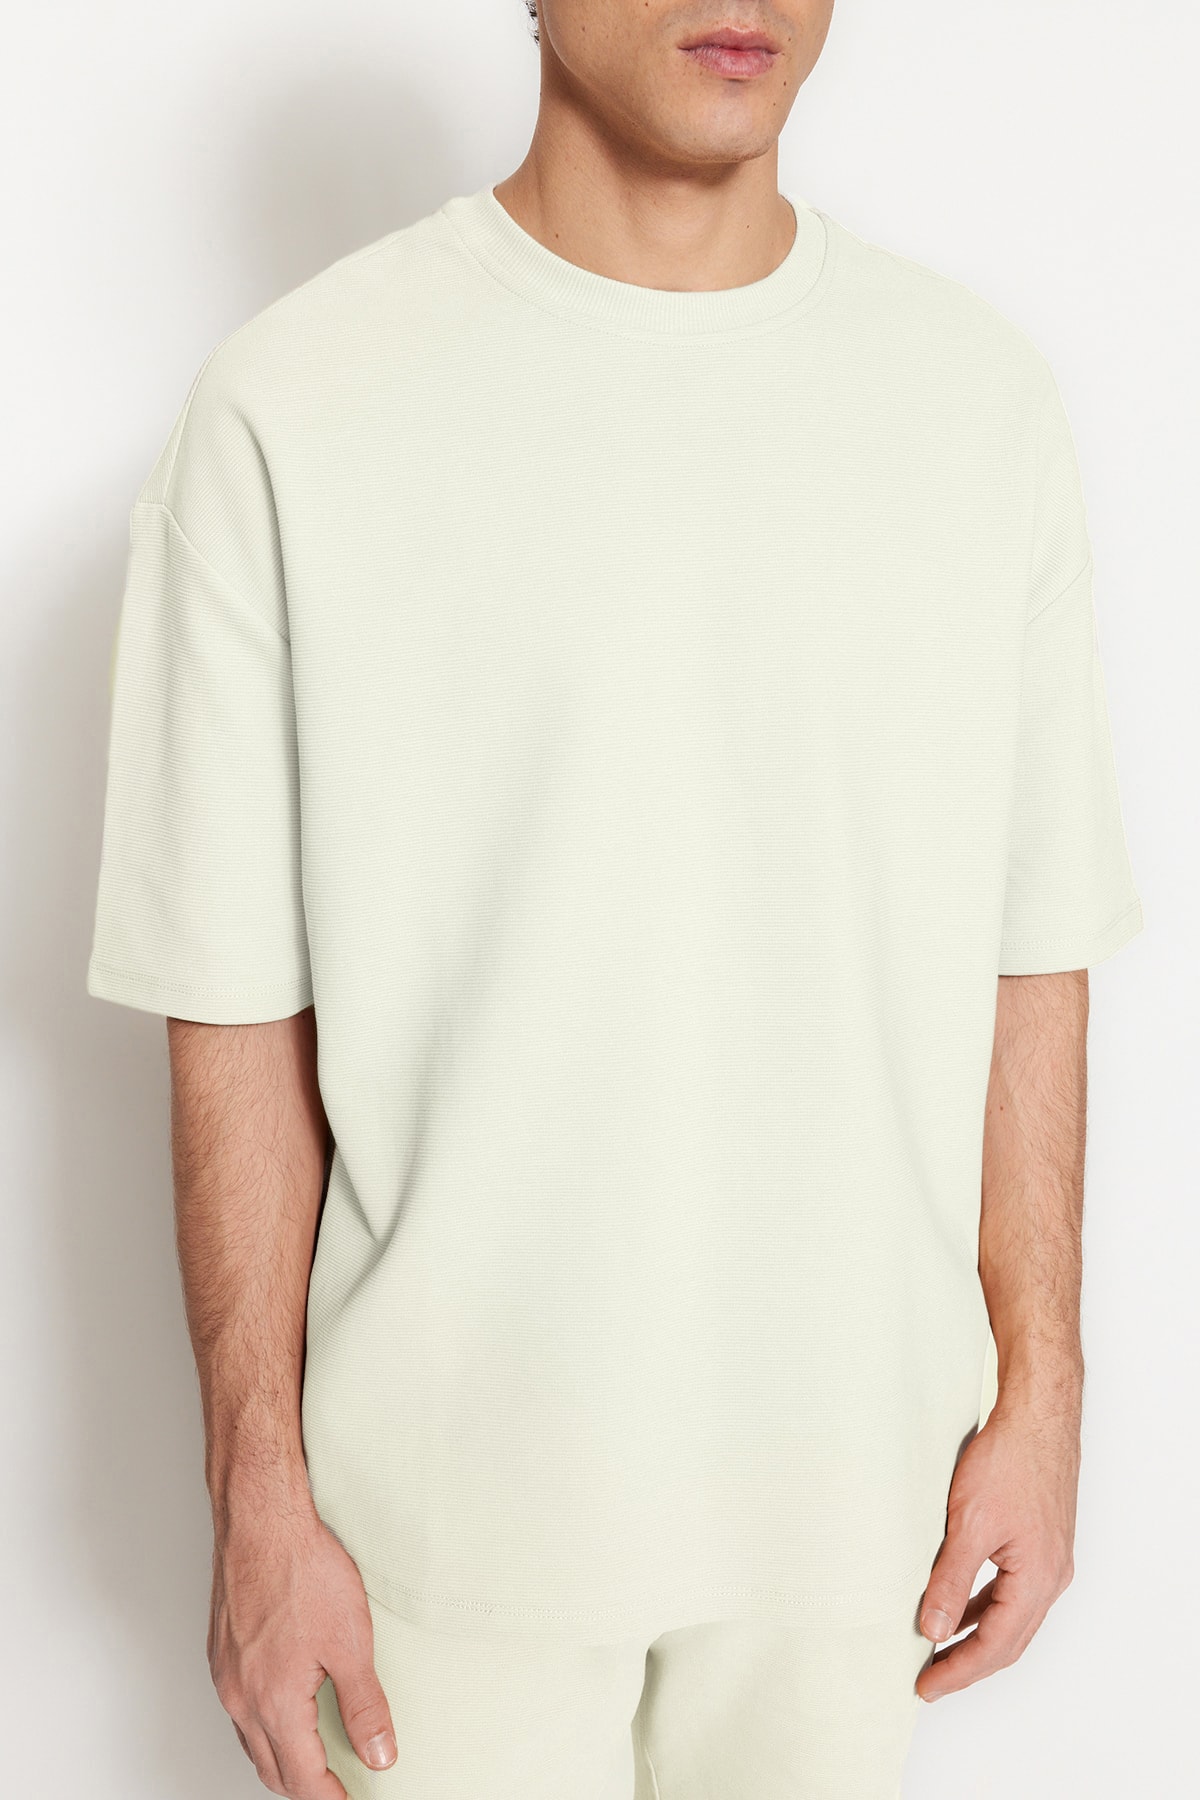 Trendyol Collection Ecrufarbenes Struktur in in - Übergröße/Weitschnitt % mit Herren-T-Shirt Trendyol limitierter Auflage Premium-Baumwolle 100 aus